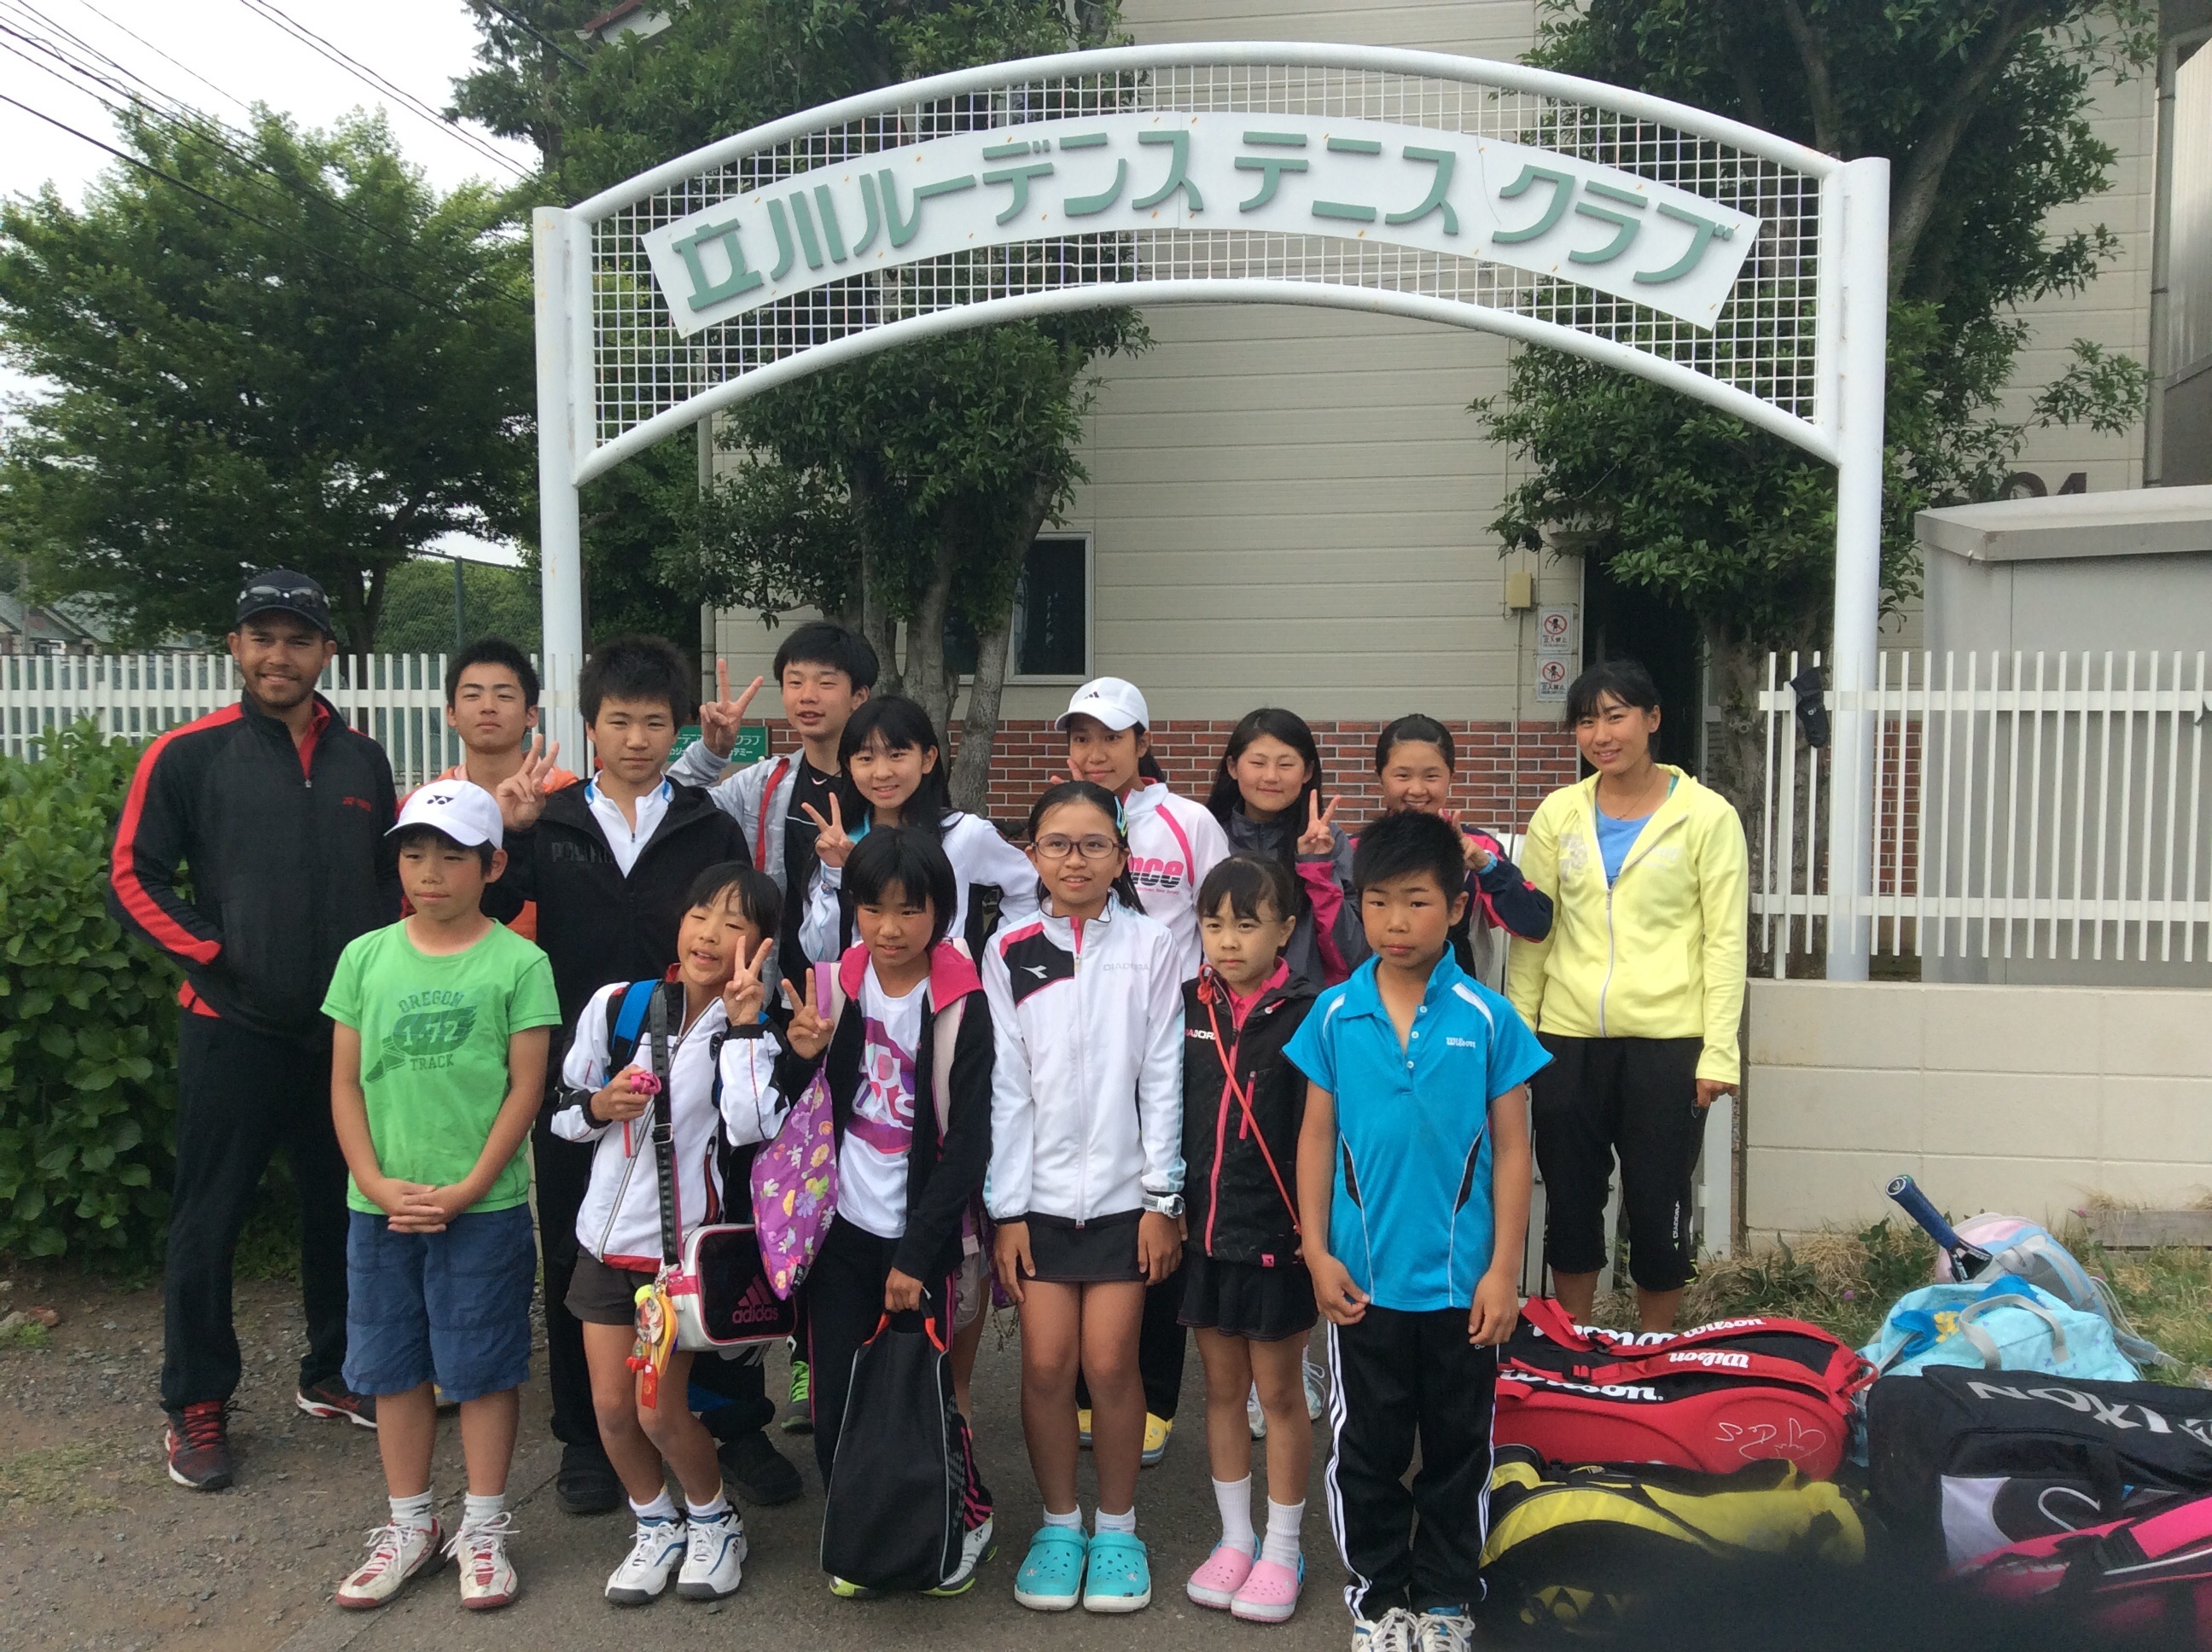 5月5 6日東京遠征 ライズテニス スタッフブログ Rise Tennis School